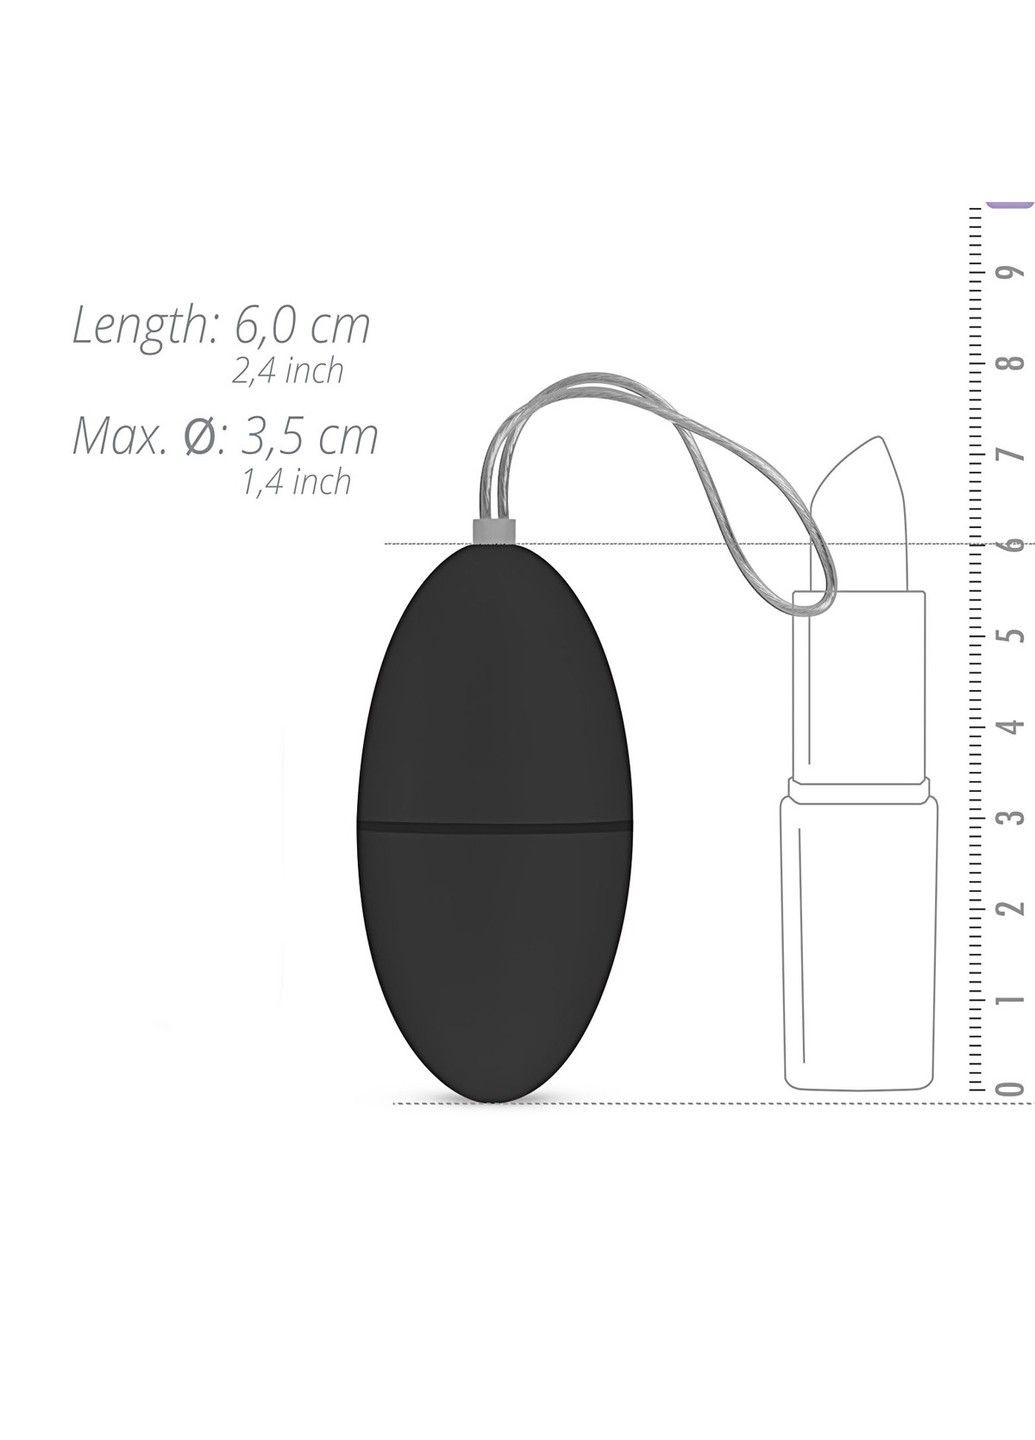 Виброяйцо с пультом Remote Control Vibrating Egg, ЧЕРНЫЙ EasyToys (290850767)